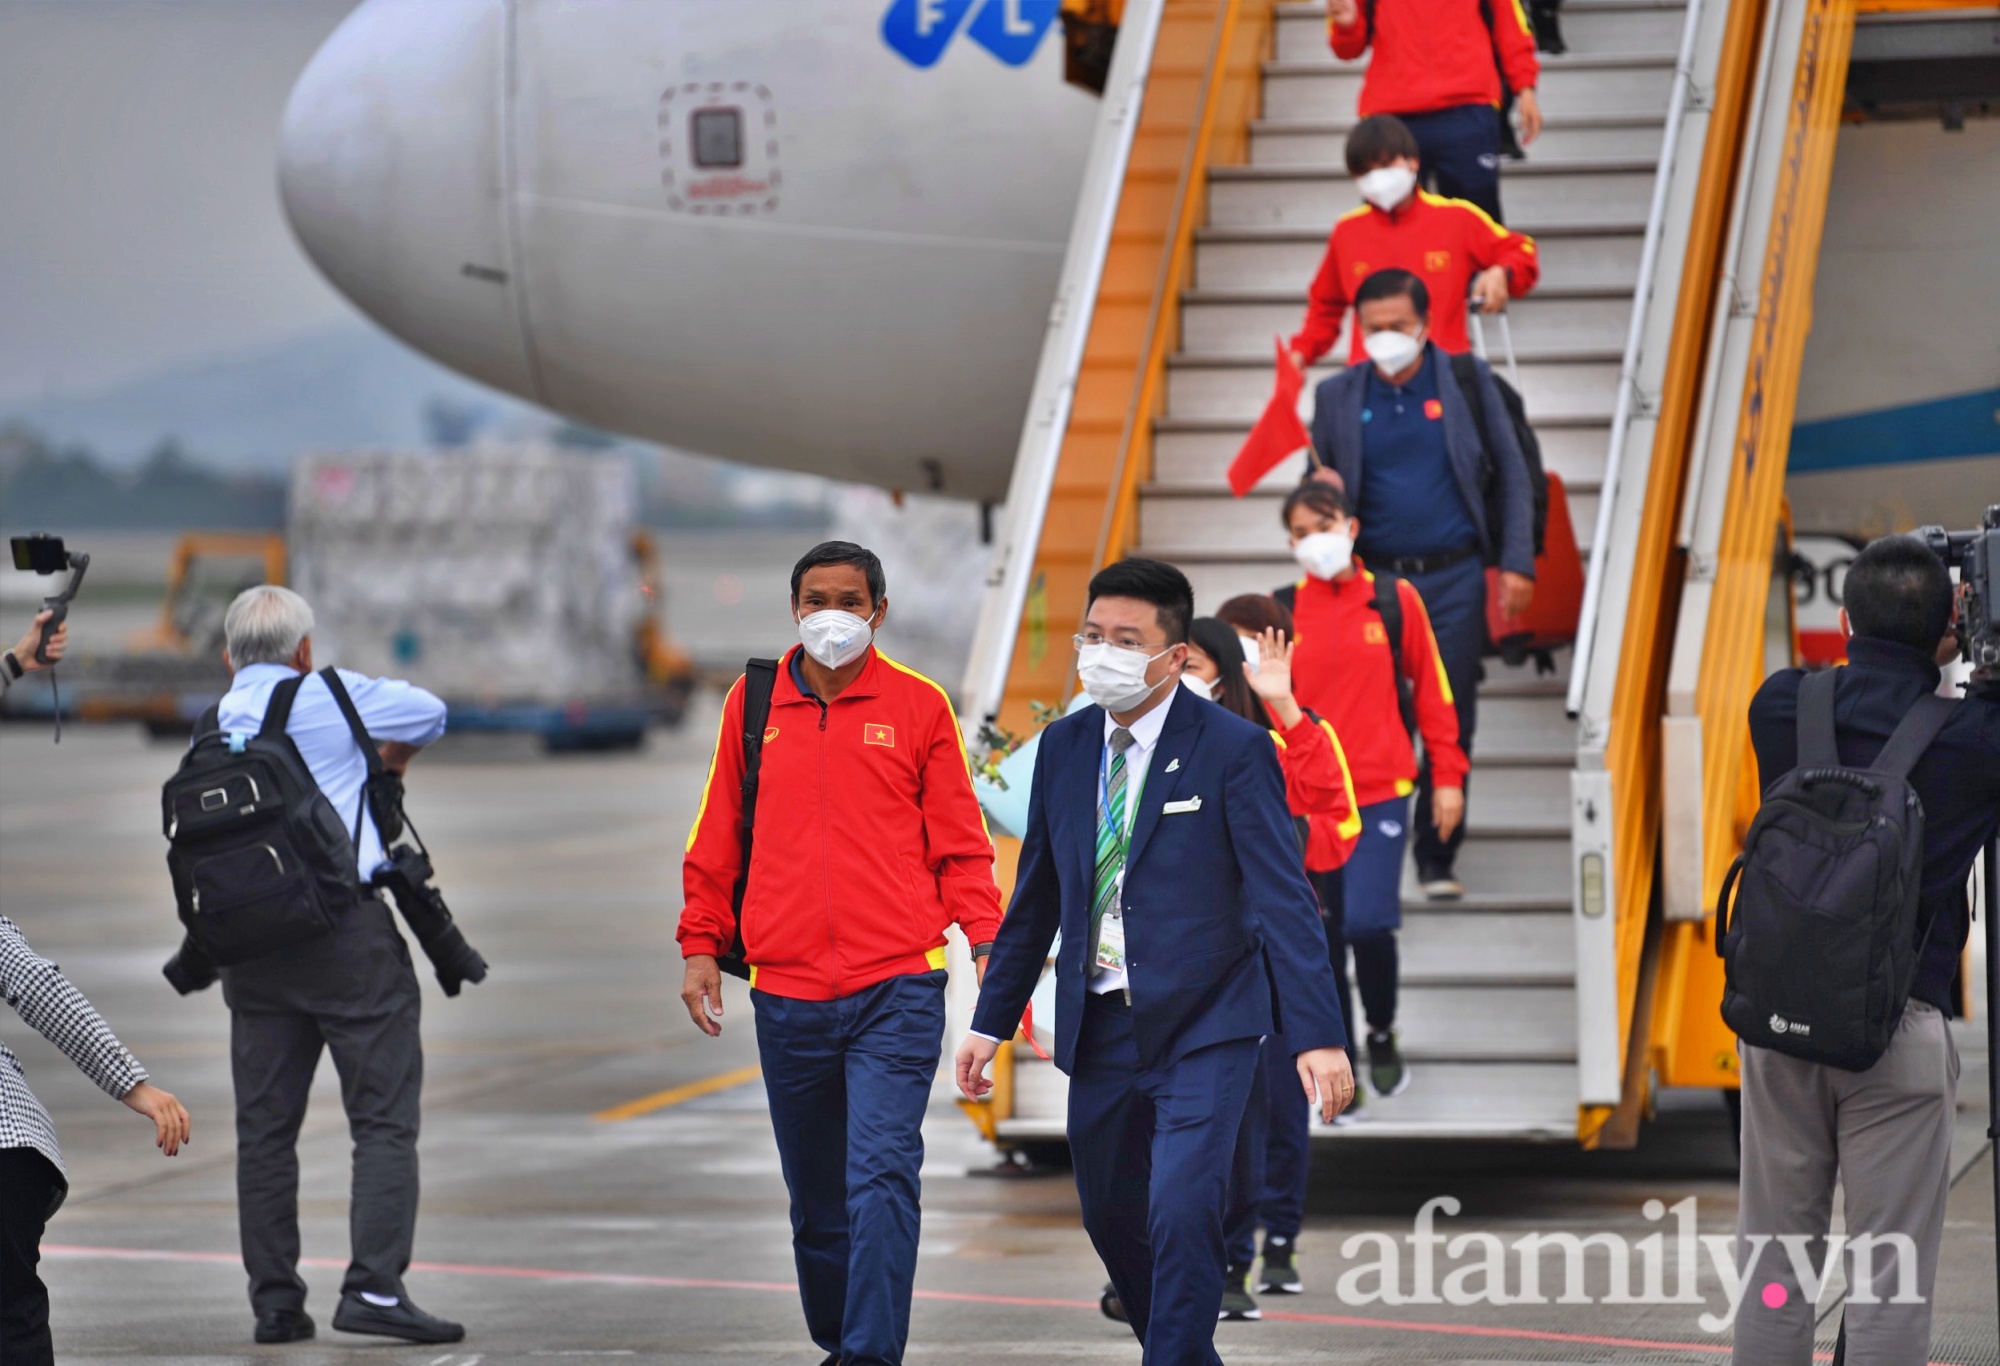 Chuyên cơ đưa ĐT nữ hạ cánh sân bay Nội Bài, người hâm mộ đón những cô gái vàng của bóng đá Việt Nam - Ảnh 4.